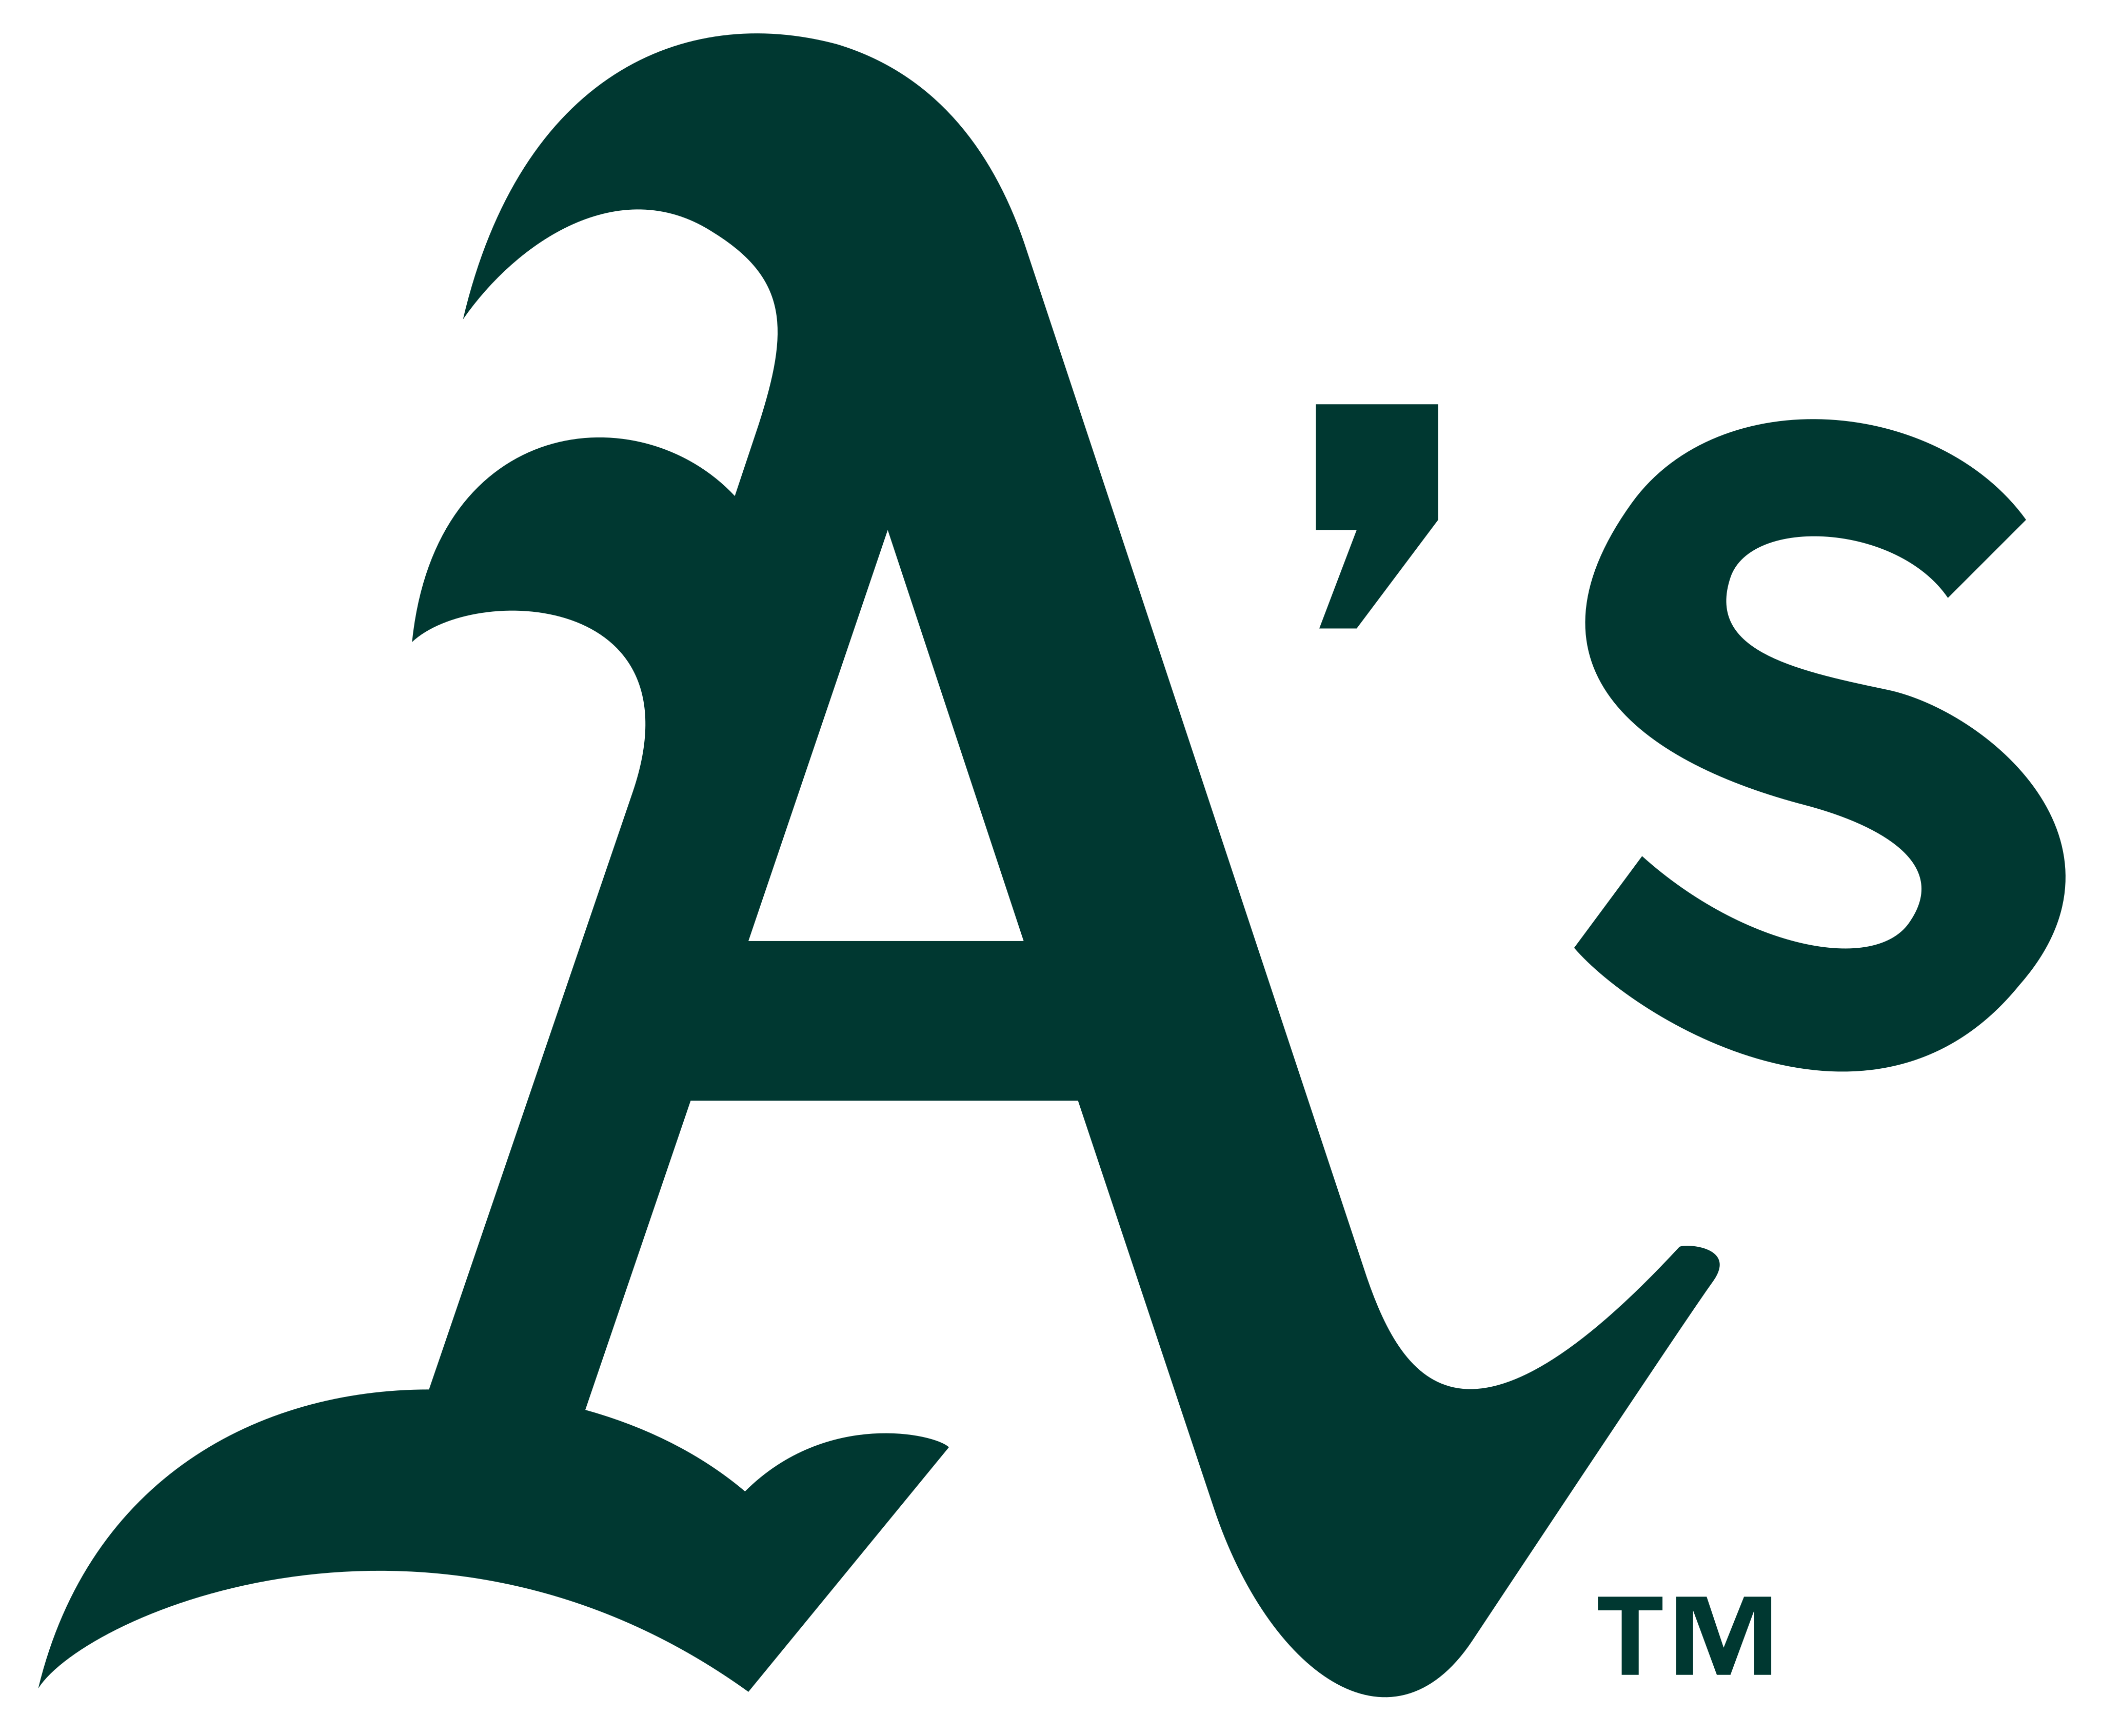 oakland athletics logo 1 - Oakland Athletics Logo